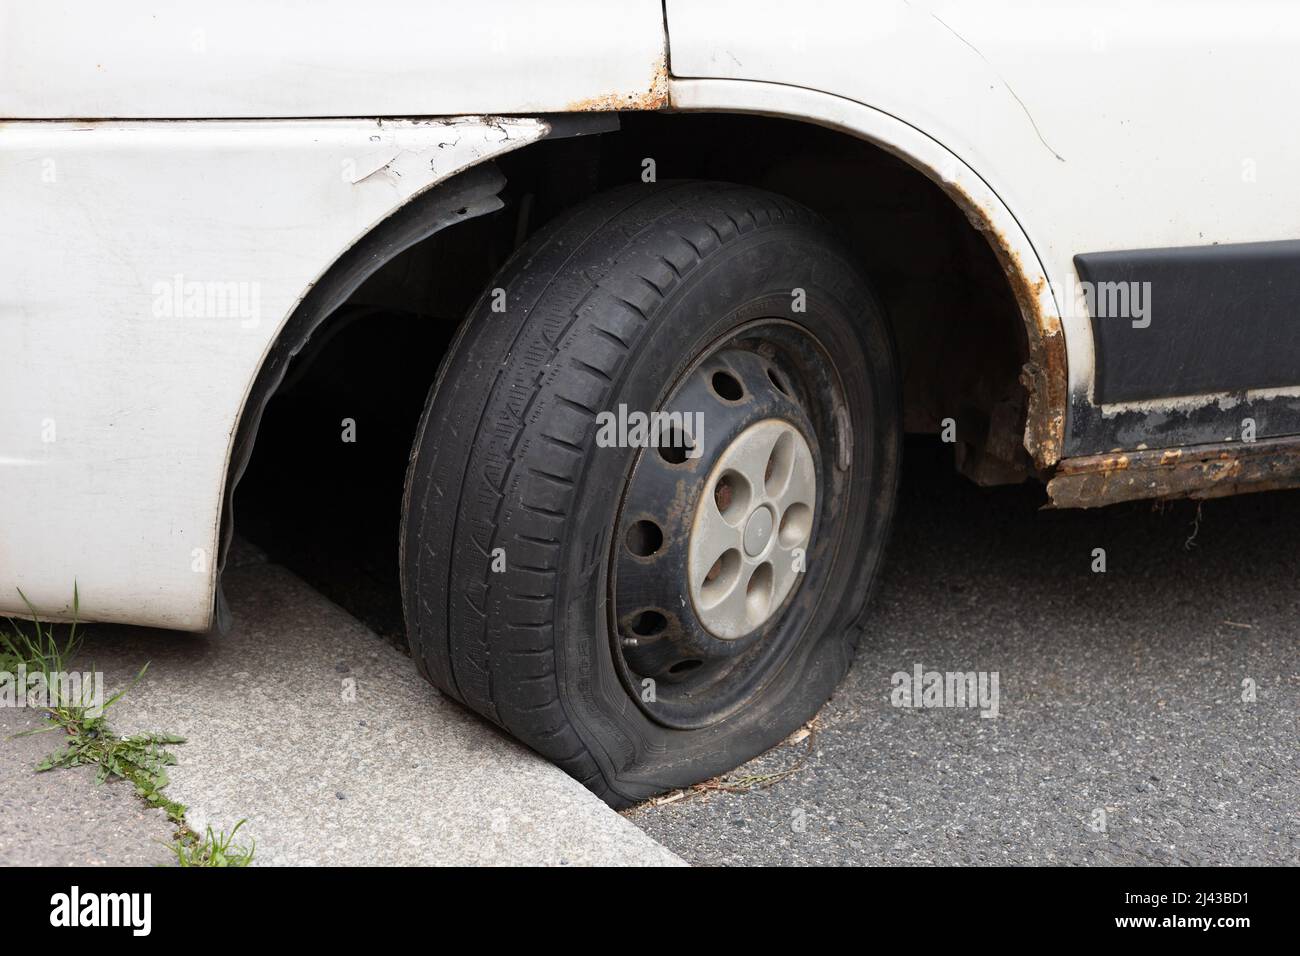 Prag, Tschechische Republik, Tschechien - 7. April 2022: Reifenpanne und Reifenpanne - beschädigte und beschädigte Räder auf einem alten rostigen Auto. Geringer Fokus. Stockfoto